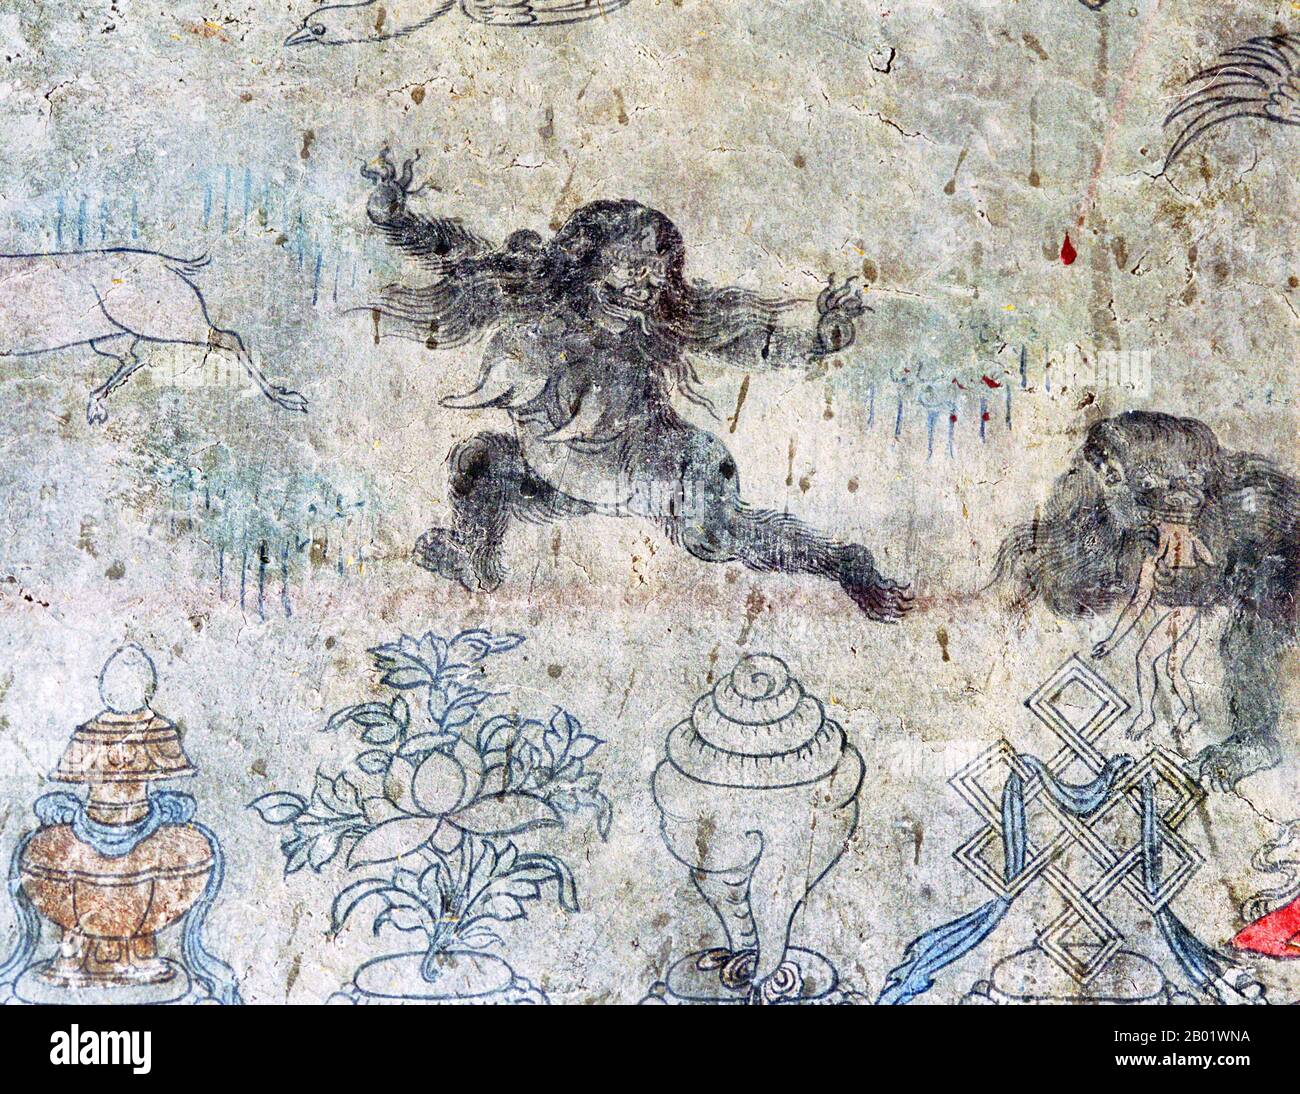 El Yeti o Abominable Snowman es un criptid similar a un simio que se dice habita en la región del Himalaya de Nepal y Tibet. Los nombres Yeti y Meh-Teh son comúnmente utilizados por los pueblos indígenas de la región, y son parte de su historia y su mitología. Las historias de los Yeti surgieron por primera vez como una faceta de la cultura popular occidental en el siglo XIX. Migoi o Mi-go (Tibetano: མི་རྒོད་, Wylie: Mi rgod, ZYPY: Migö/Mirgö) se traduce como 'hombre salvaje'. Foto de stock